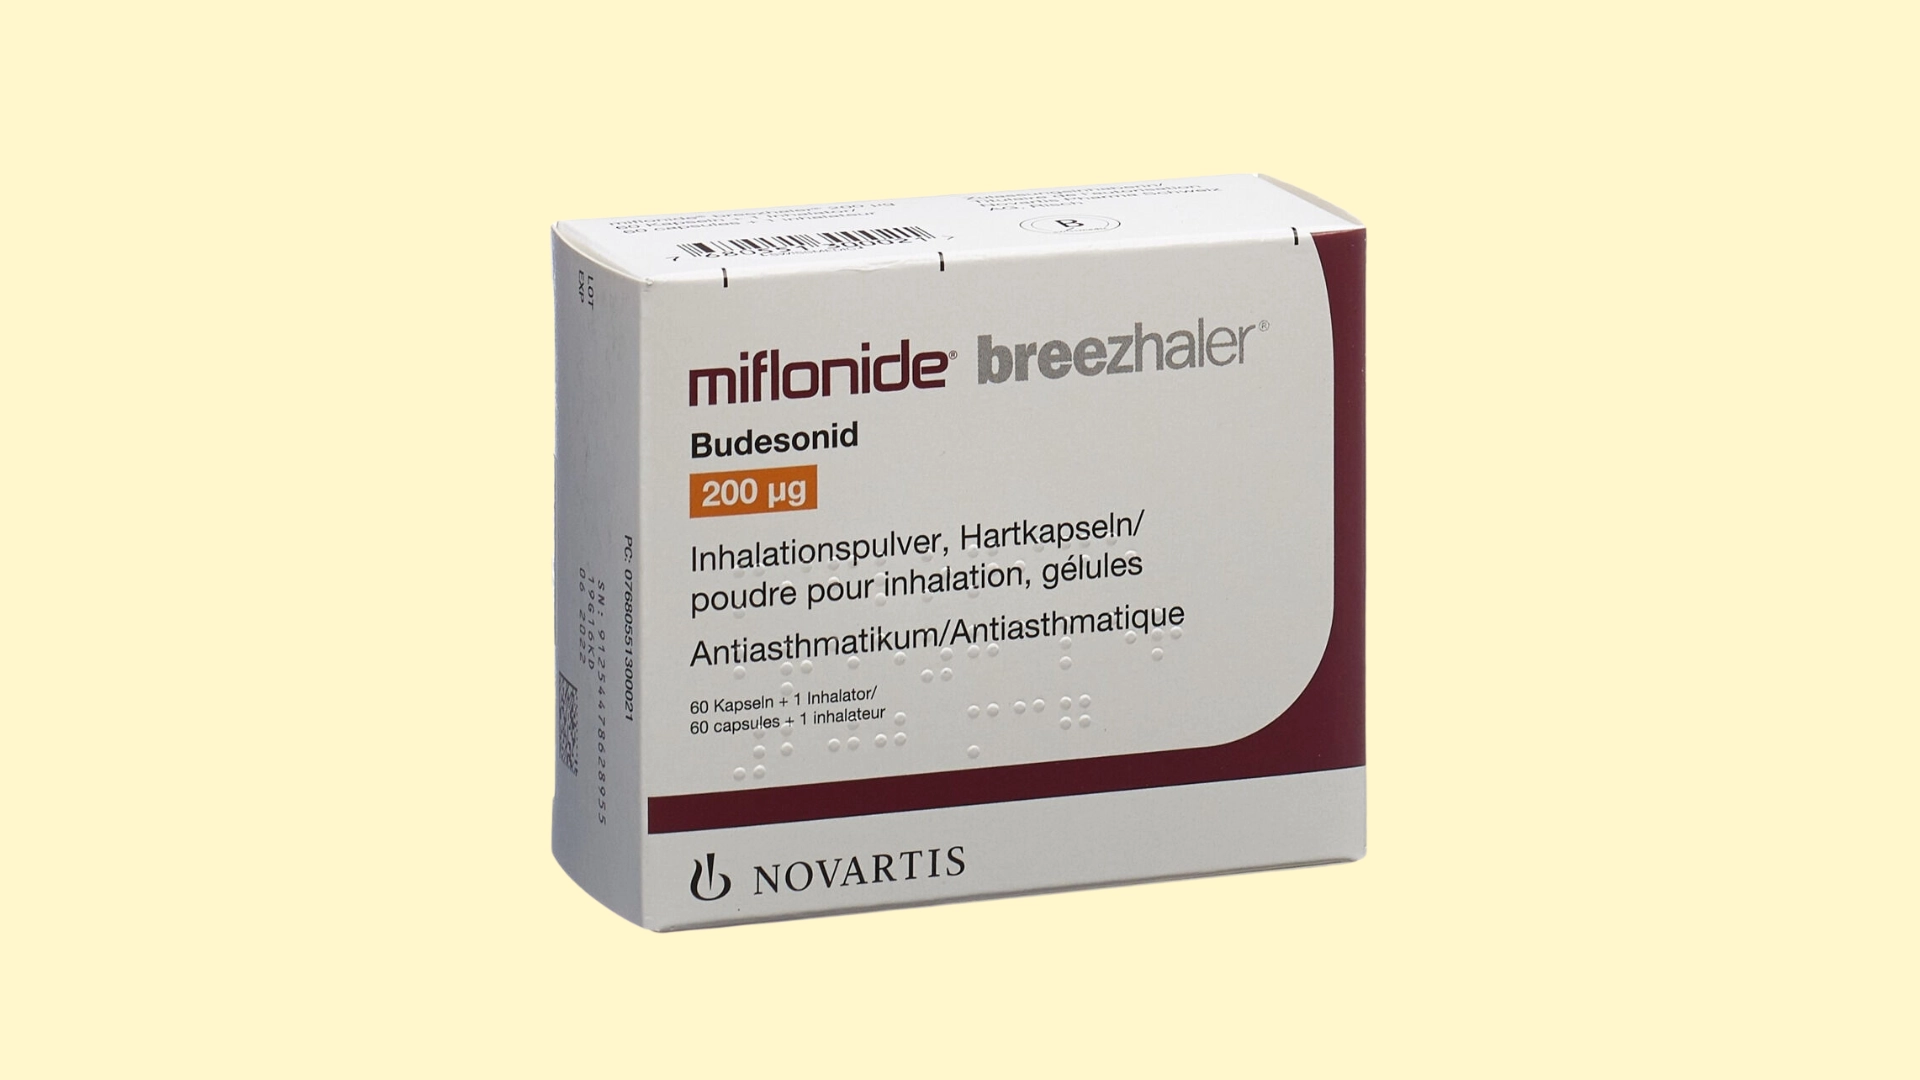 Miflonide Breezhaler E recepta  recepta online z konsultacją | cena  dawkowanie  przeciwwskazania